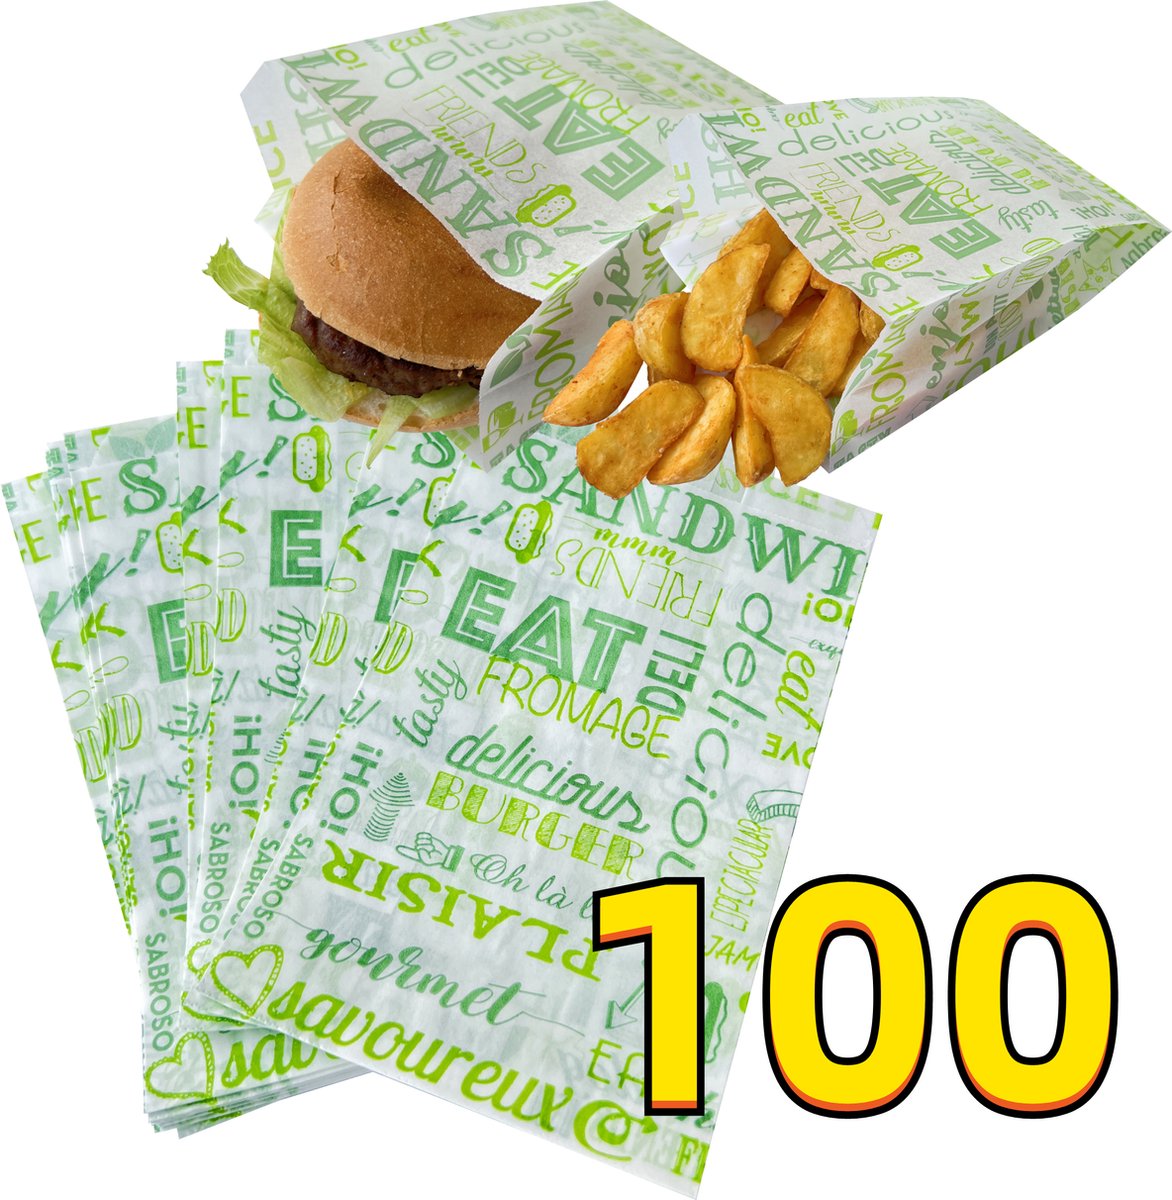 Rainbecom - 100 Stuks - Hamburger Zakje Papier - Vetvrij Papier - Papieren Zak voor Sandwiches - Groen